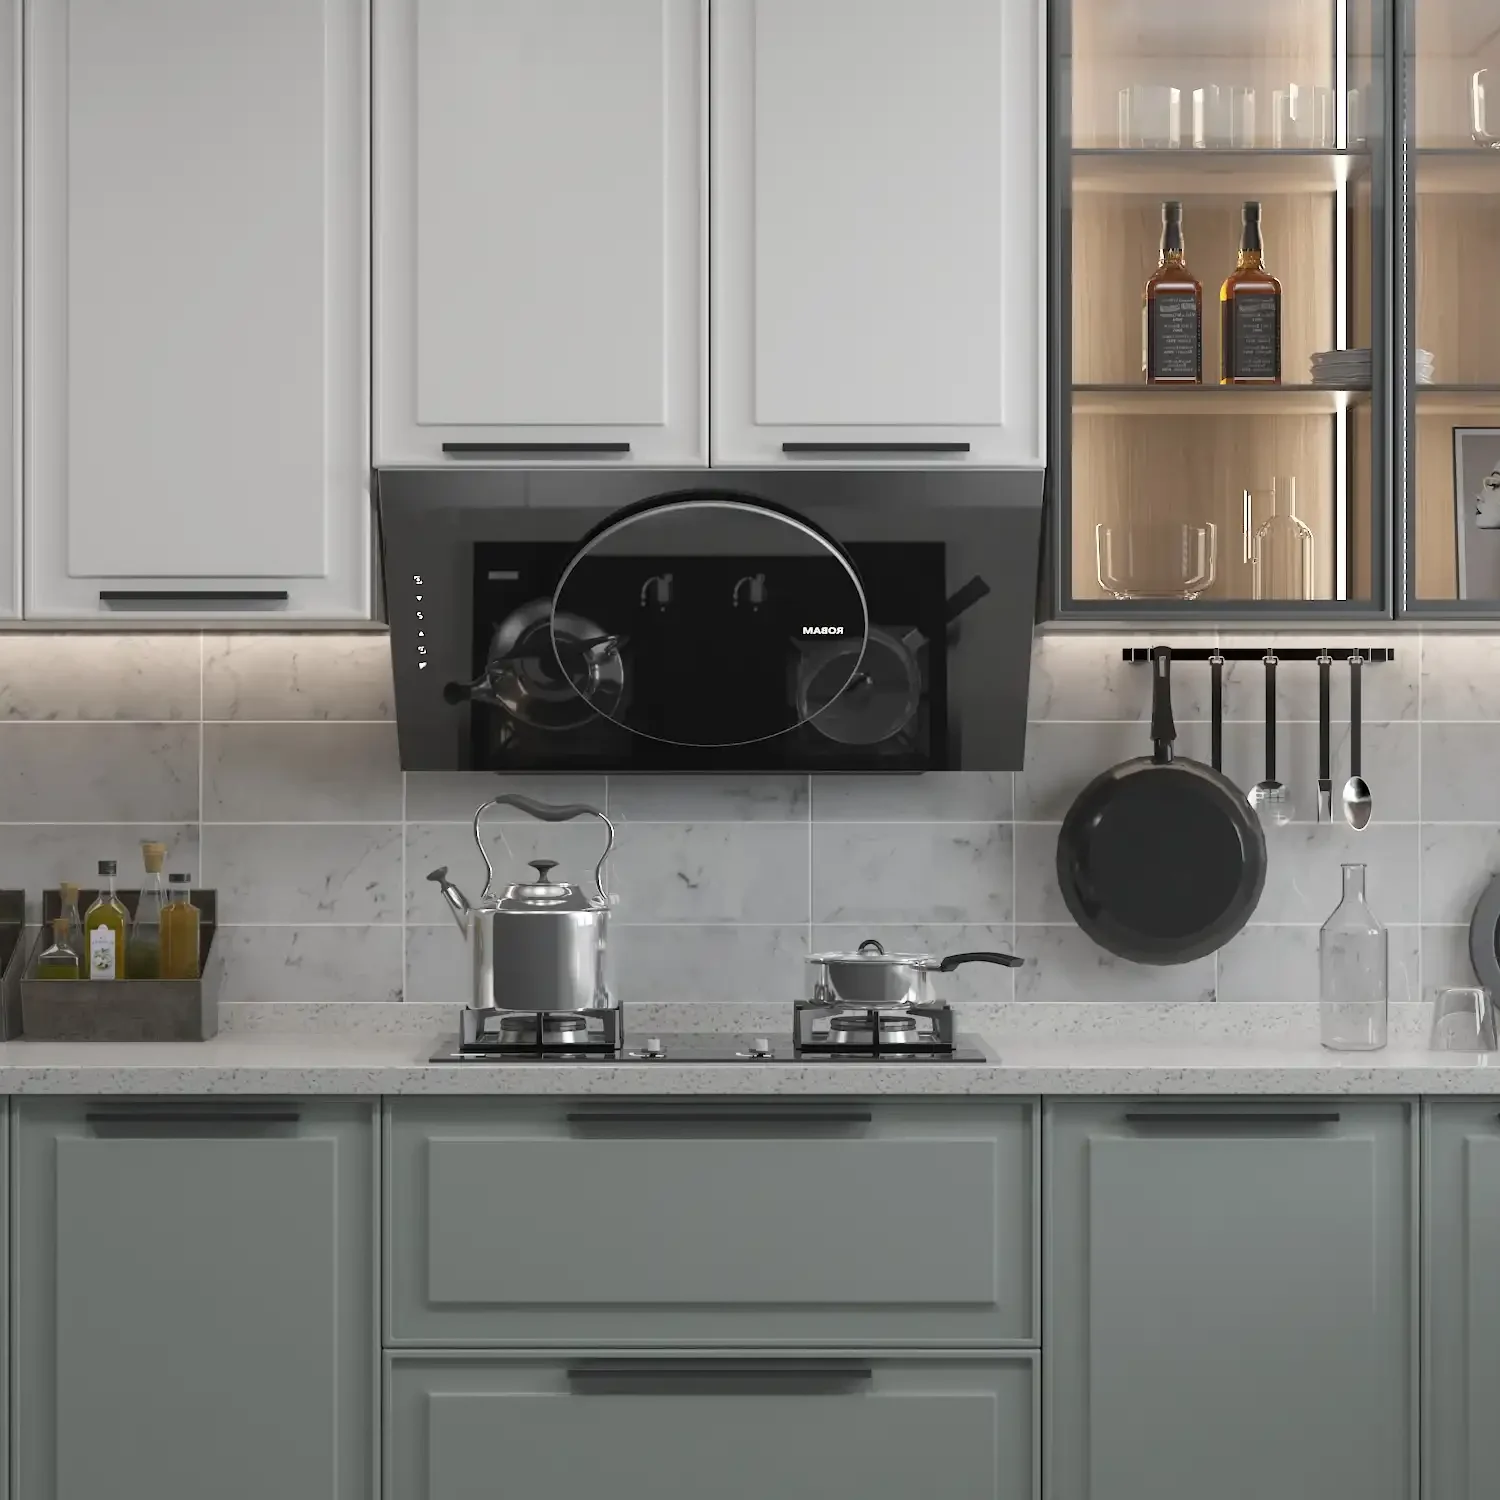 Image of kitchen backsplash featuring Bianco Carrara 6x12 Marble Honed Subway Tile